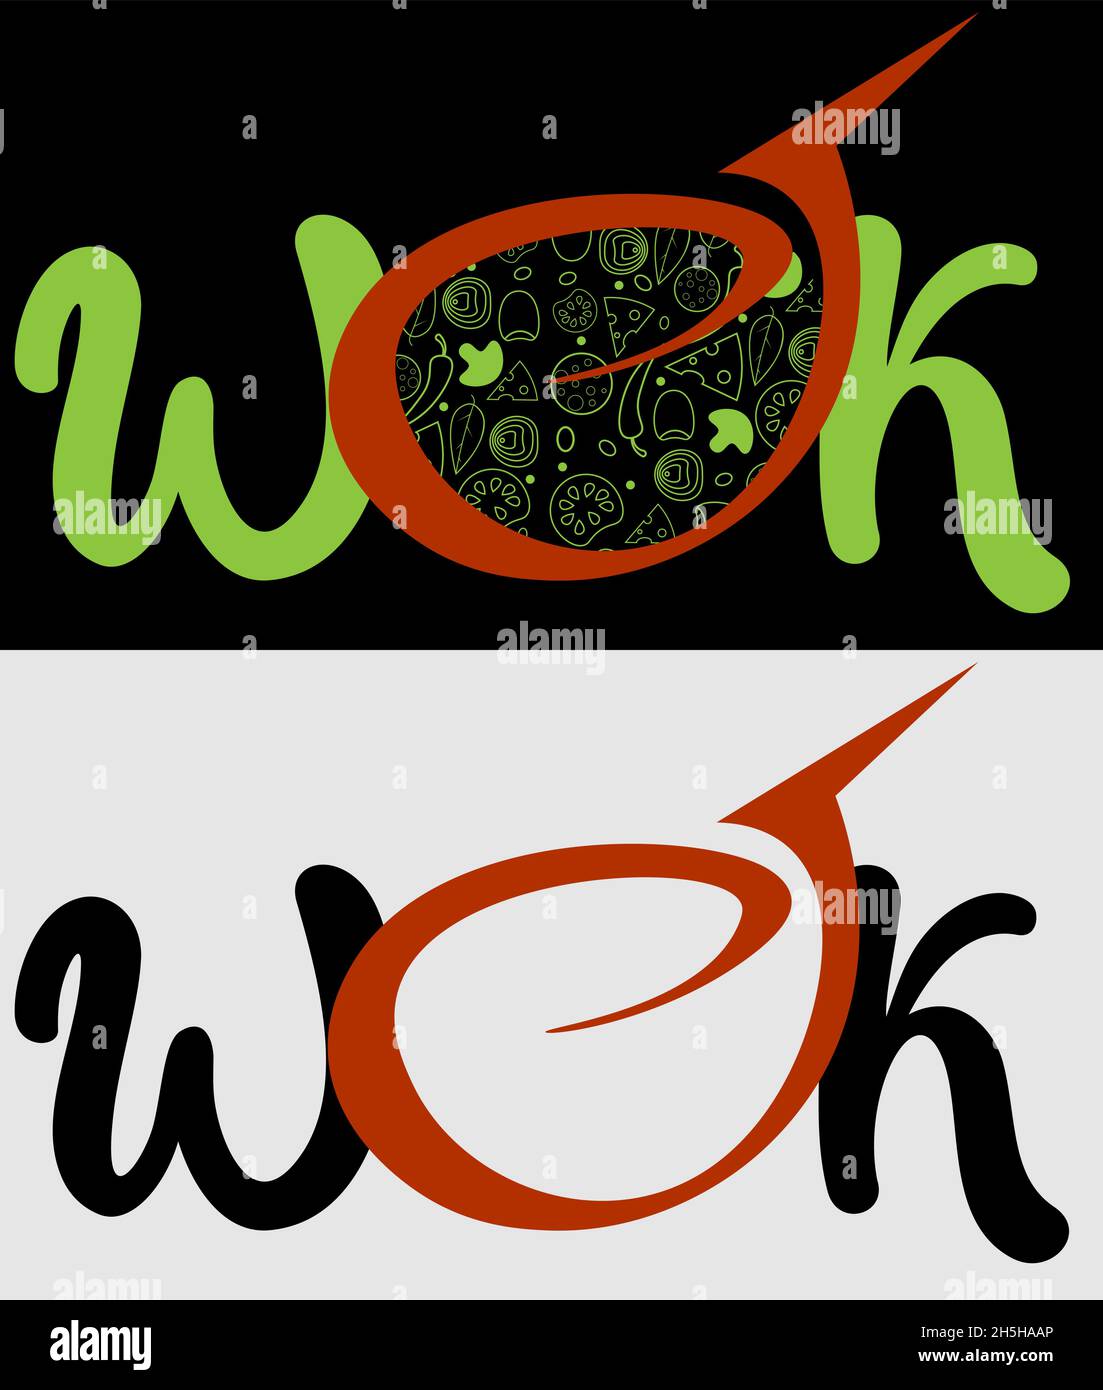 logo minimal de la cuisine asiatique wok en deux versions 1 Illustration de Vecteur